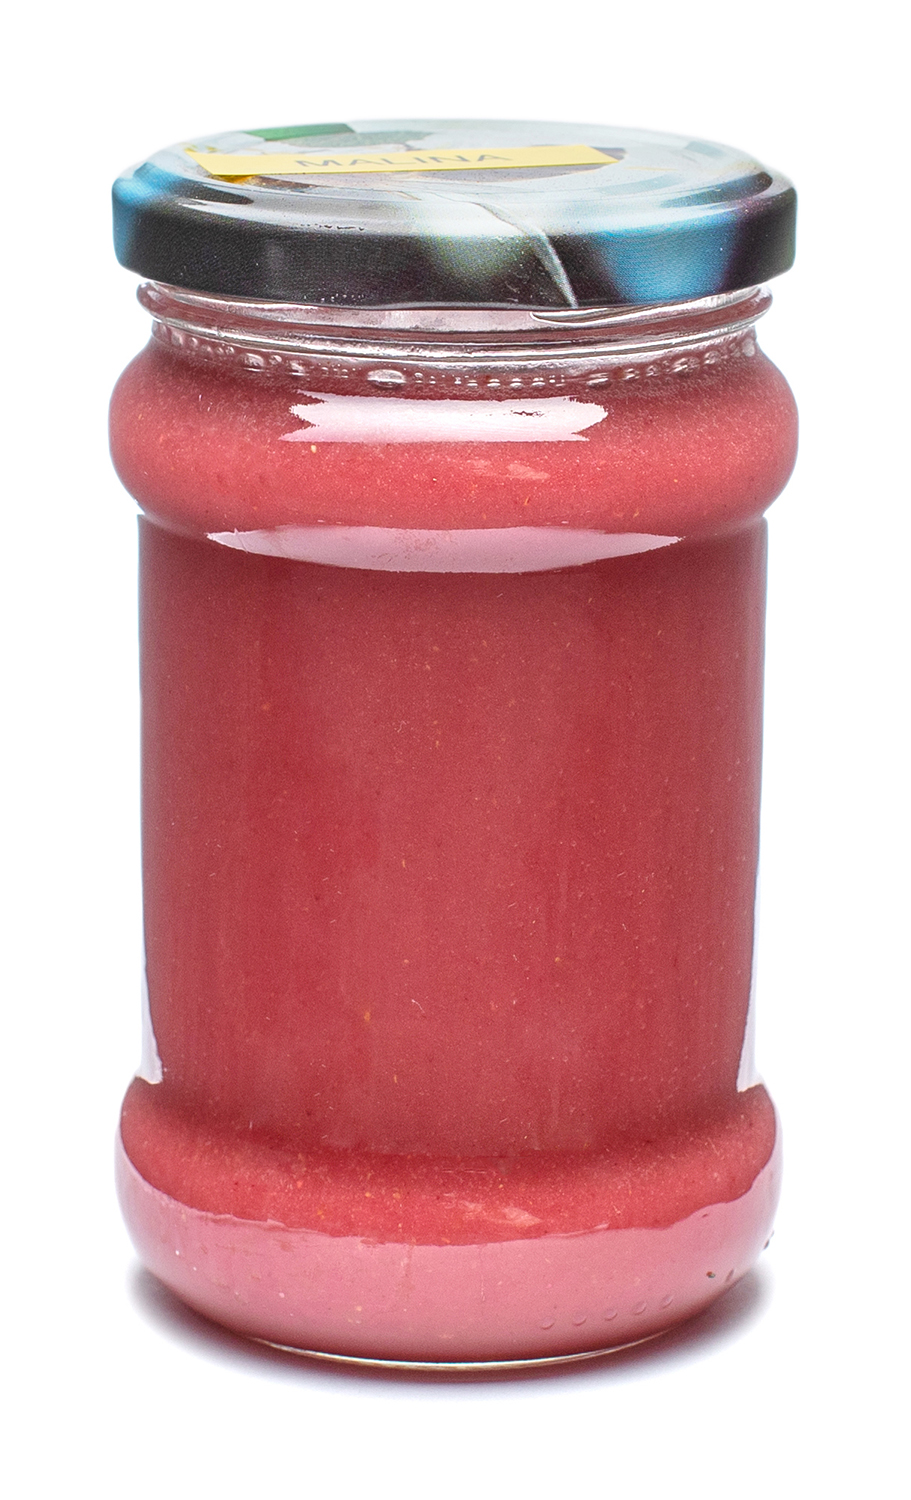 MiodoMix - Miód Wielokwiatowy Kremowany z Maliną (słoik szklany 400 g) - Karton 40 sztuk